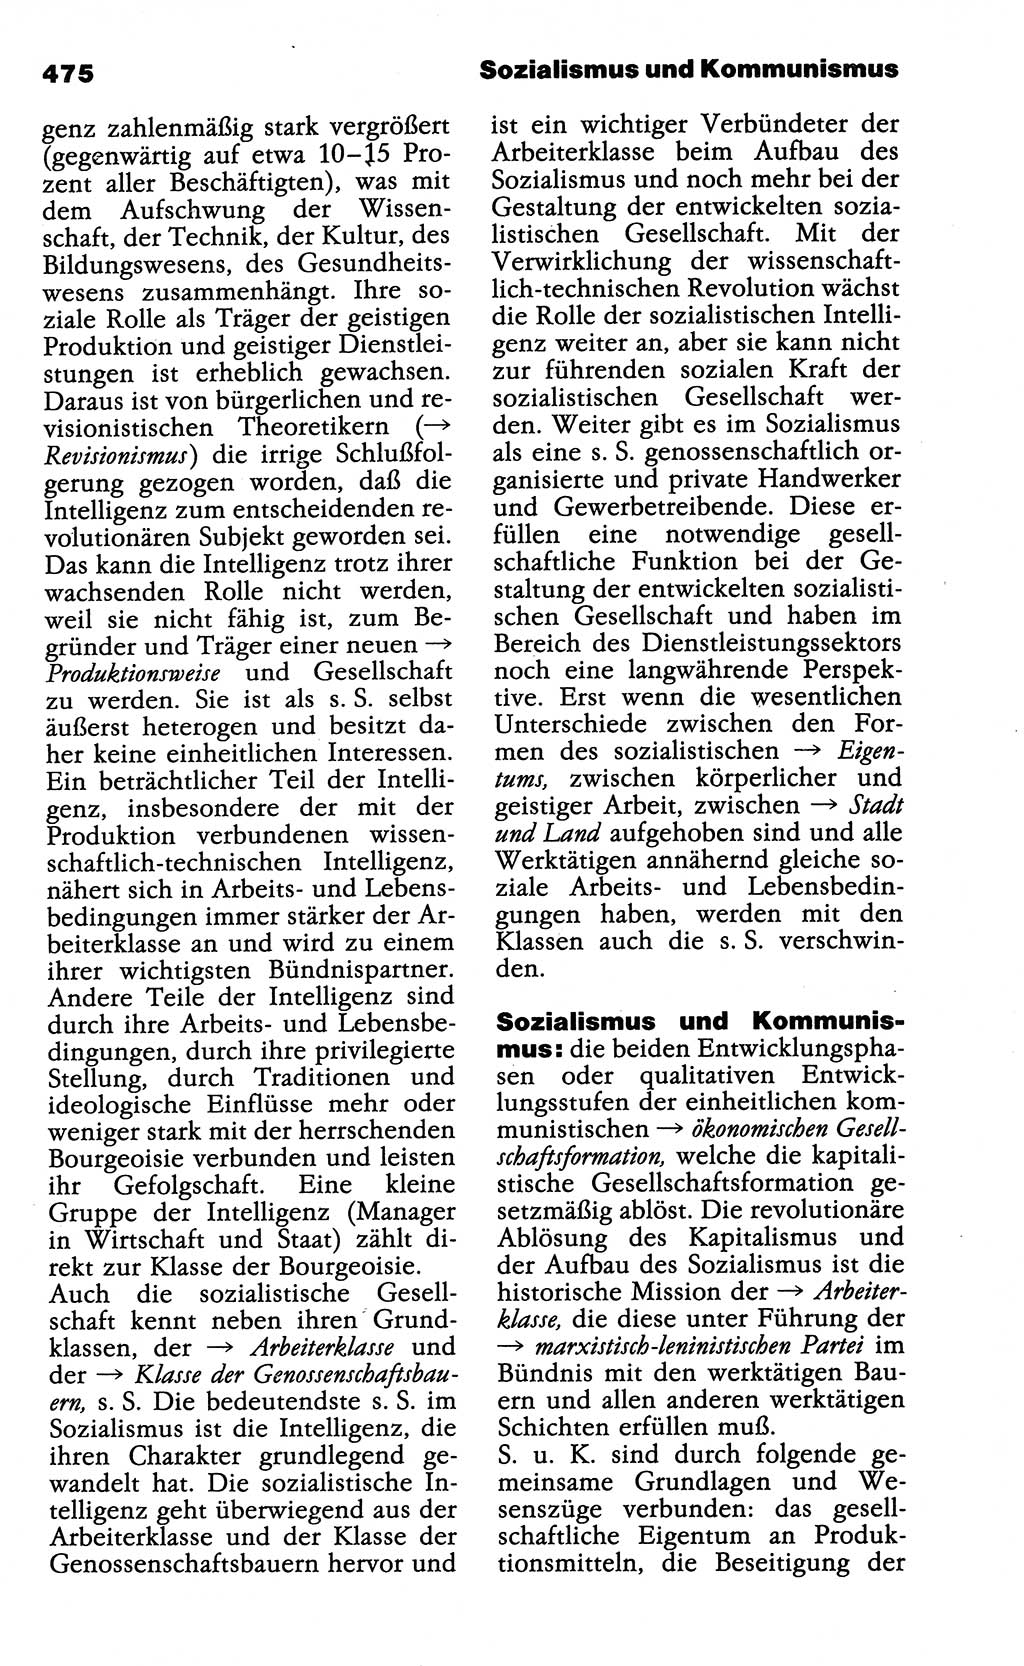 Wörterbuch der marxistisch-leninistischen Philosophie [Deutsche Demokratische Republik (DDR)] 1985, Seite 475 (Wb. ML Phil. DDR 1985, S. 475)